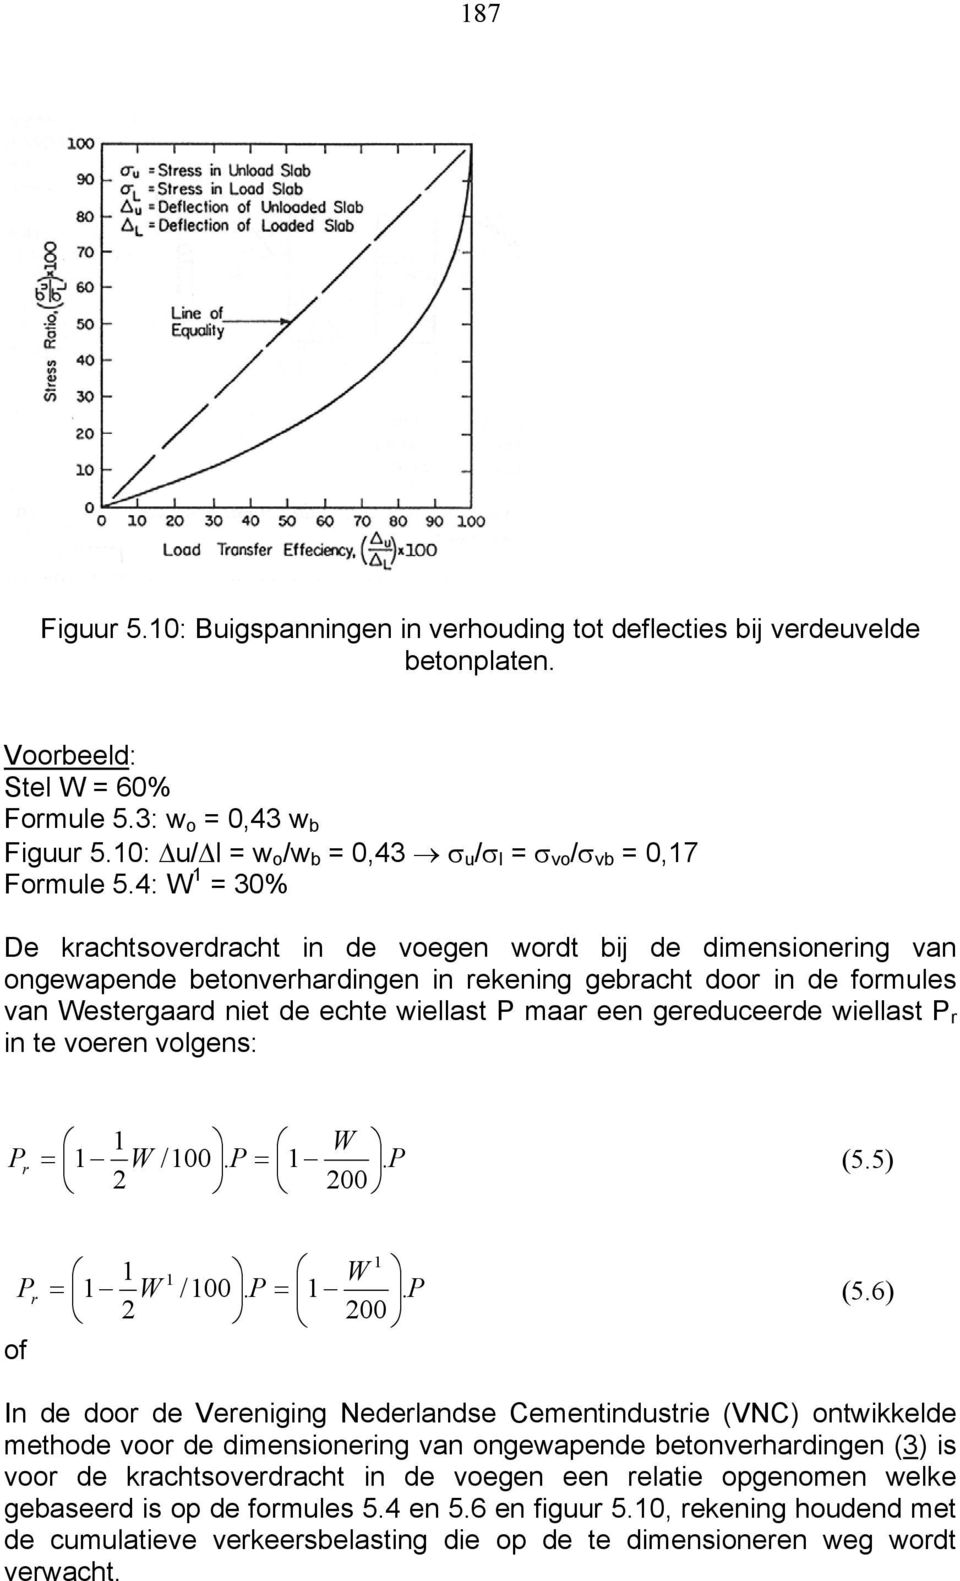 4: W 1 = 30% De krachtsoverdracht in de voegen wordt bij de dimensionering van ongewapende betonverhardingen in rekening gebracht door in de formules van Westergaard niet de echte wiellast P maar een